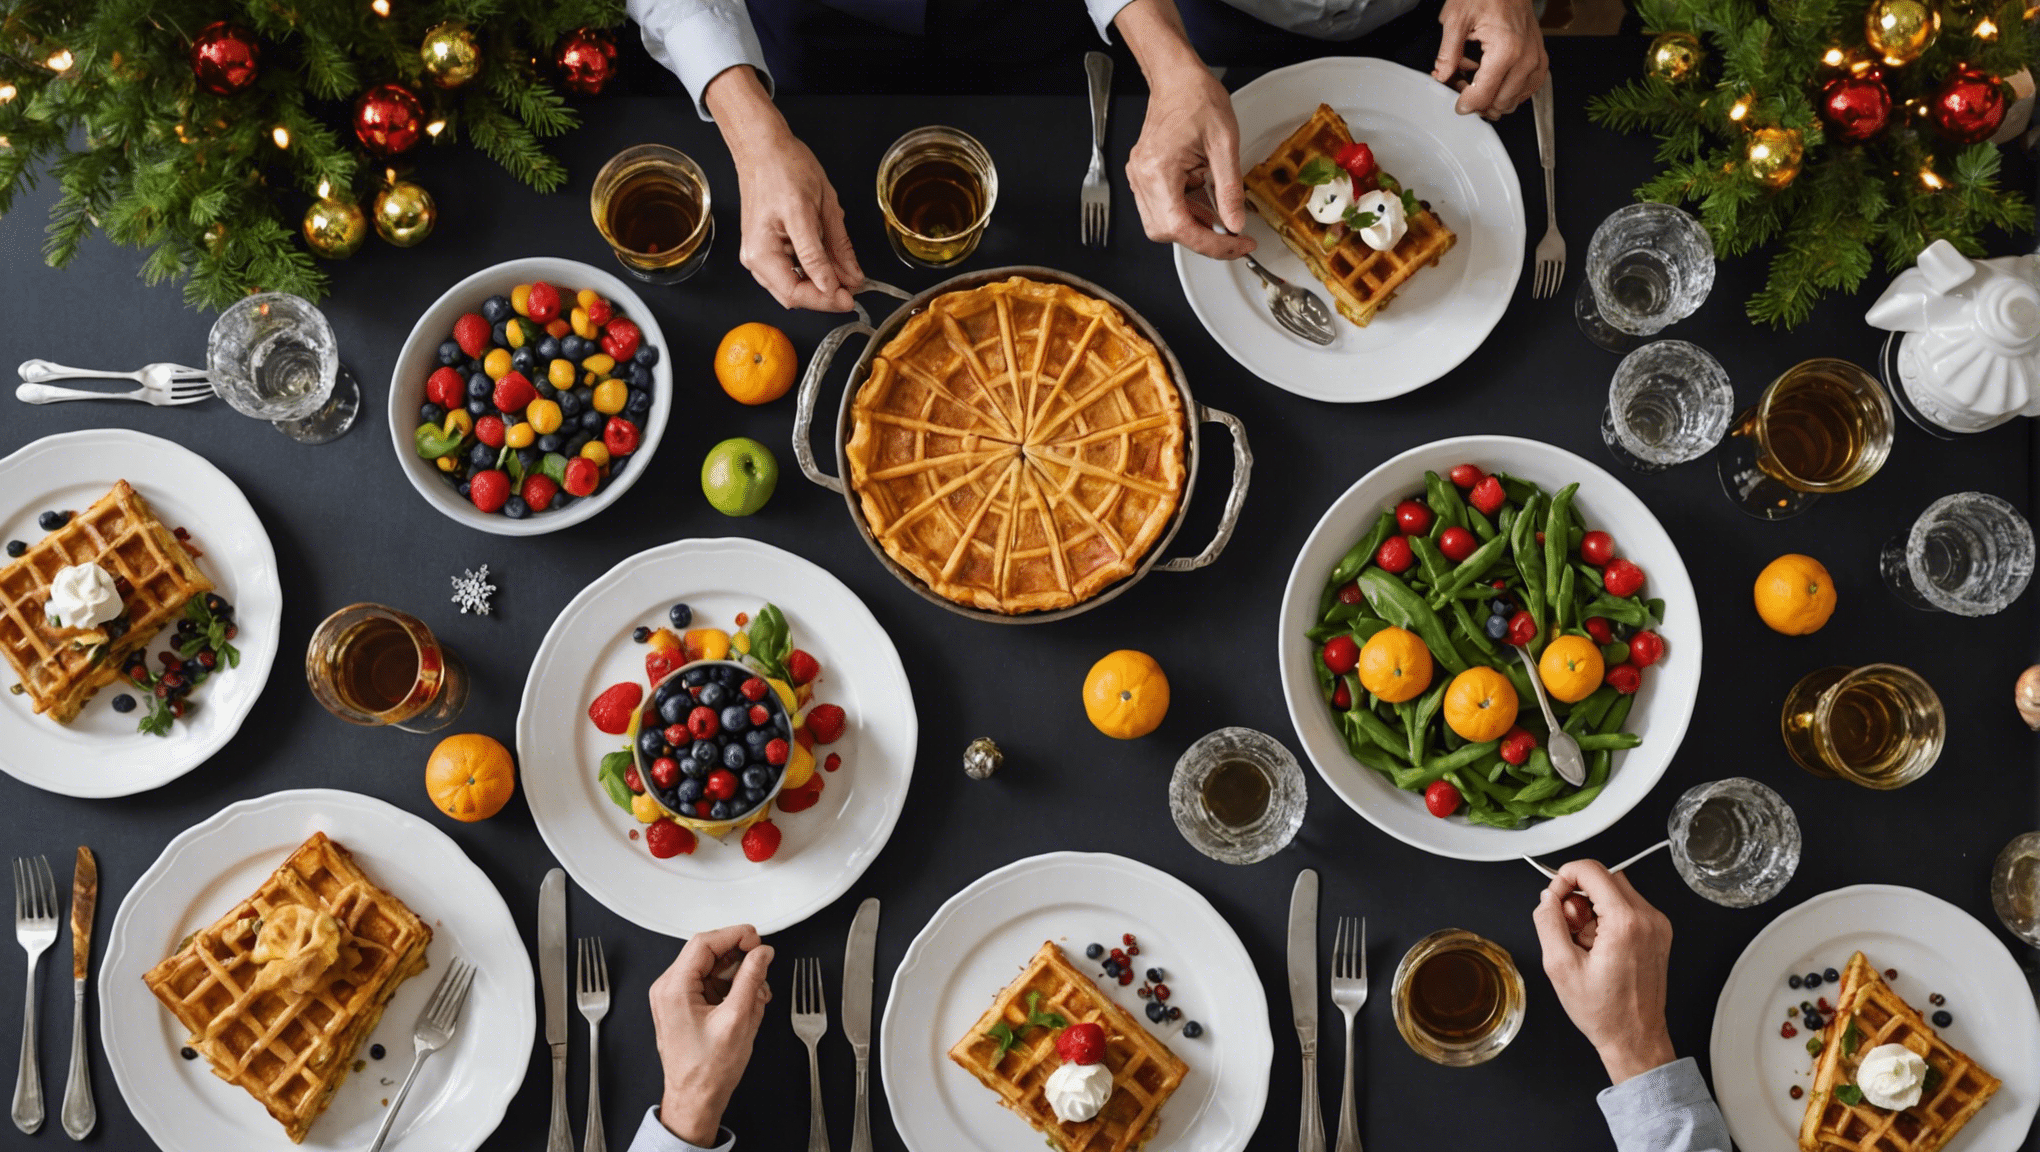 découvrez des idées de plats délicieux et festifs pour célébrer les fêtes de fin d'année en beauté. des recettes savoureuses et originales pour régaler vos convives.